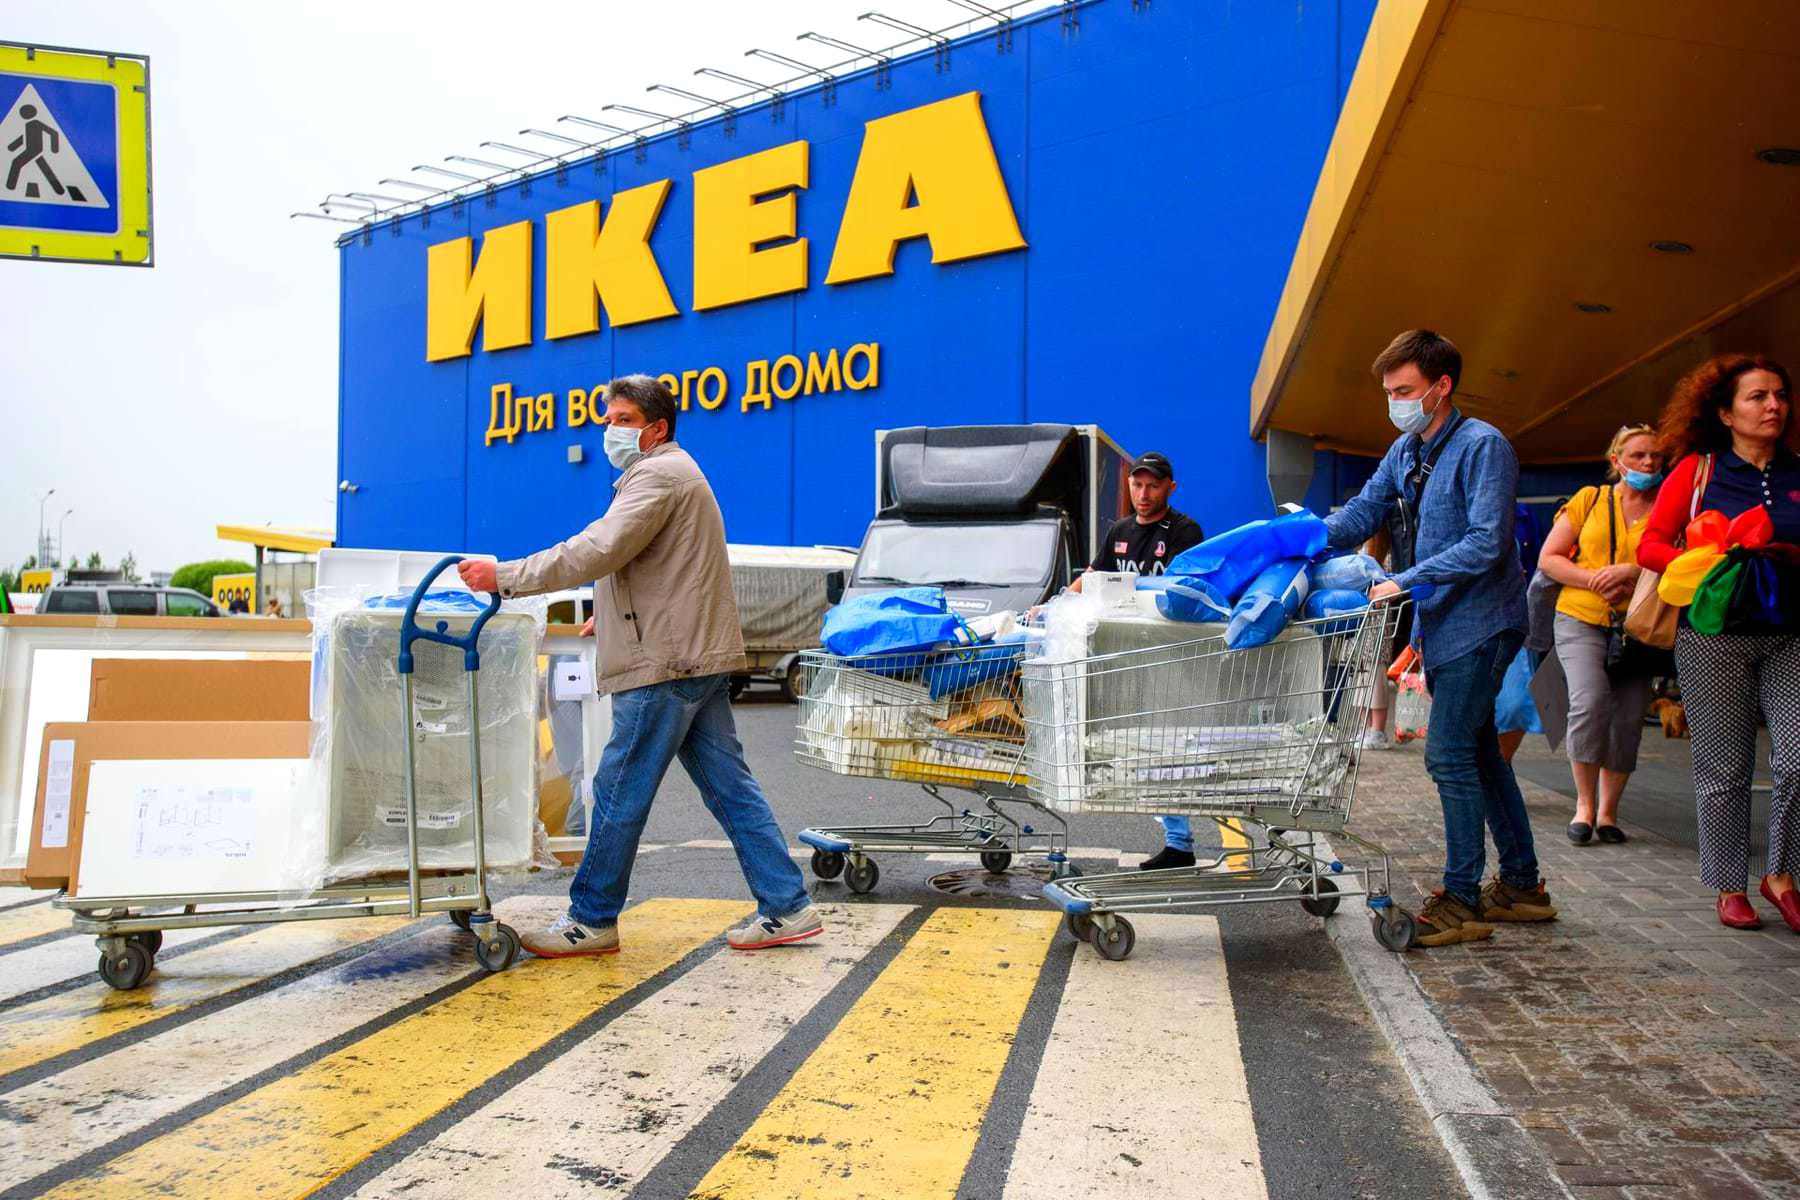 Стало известно, что прибыль IKEA в общем снизилась вдвое